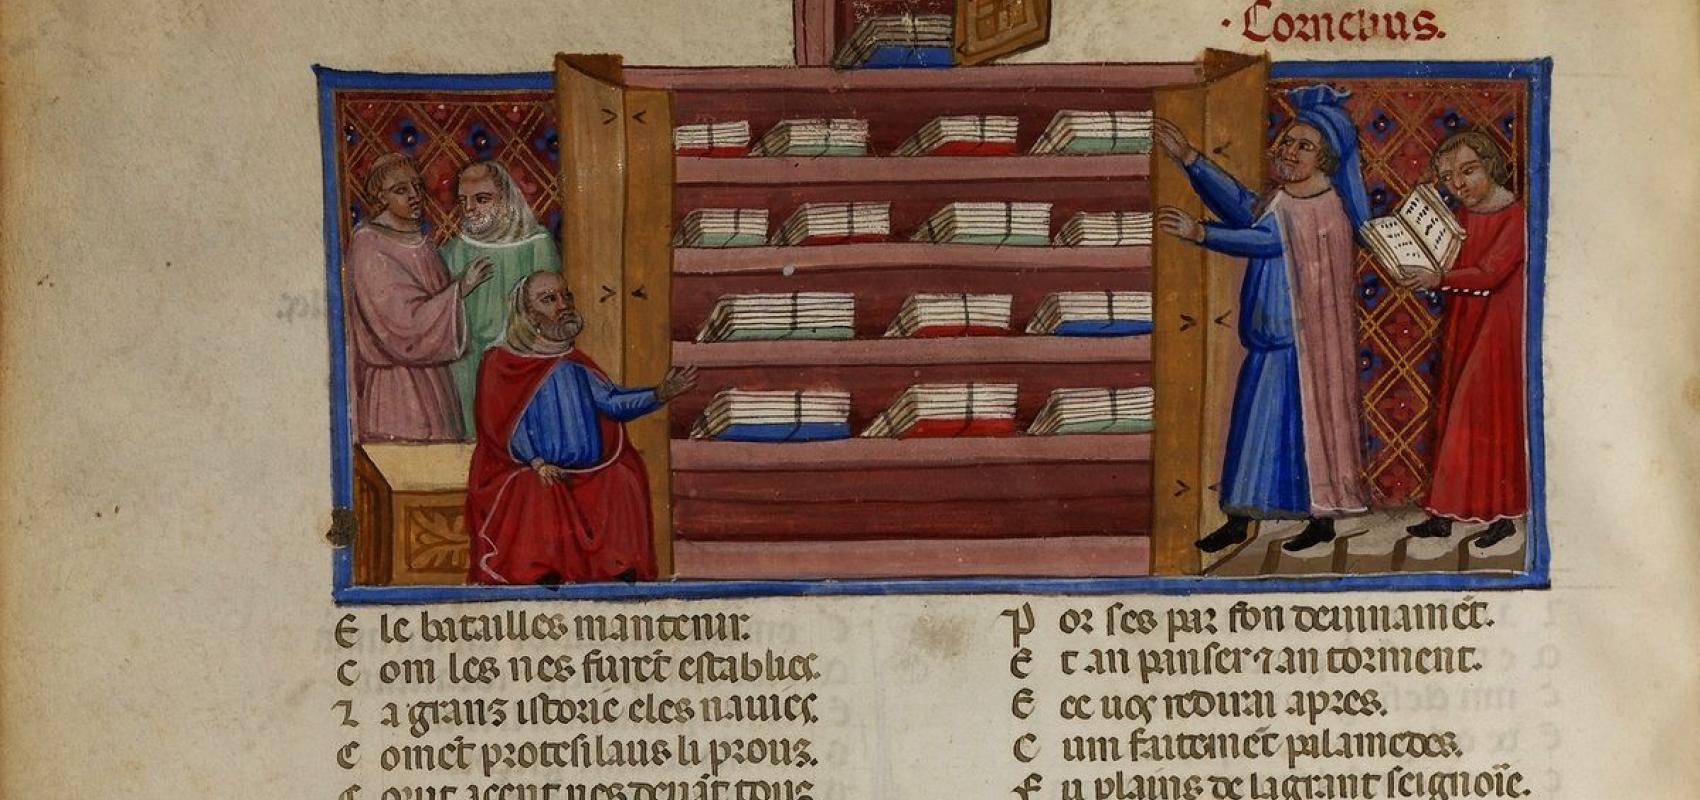 Roman de Troie de Benoît de Sainte-Maure - 1340-1350 - BnF, département des Manuscrits